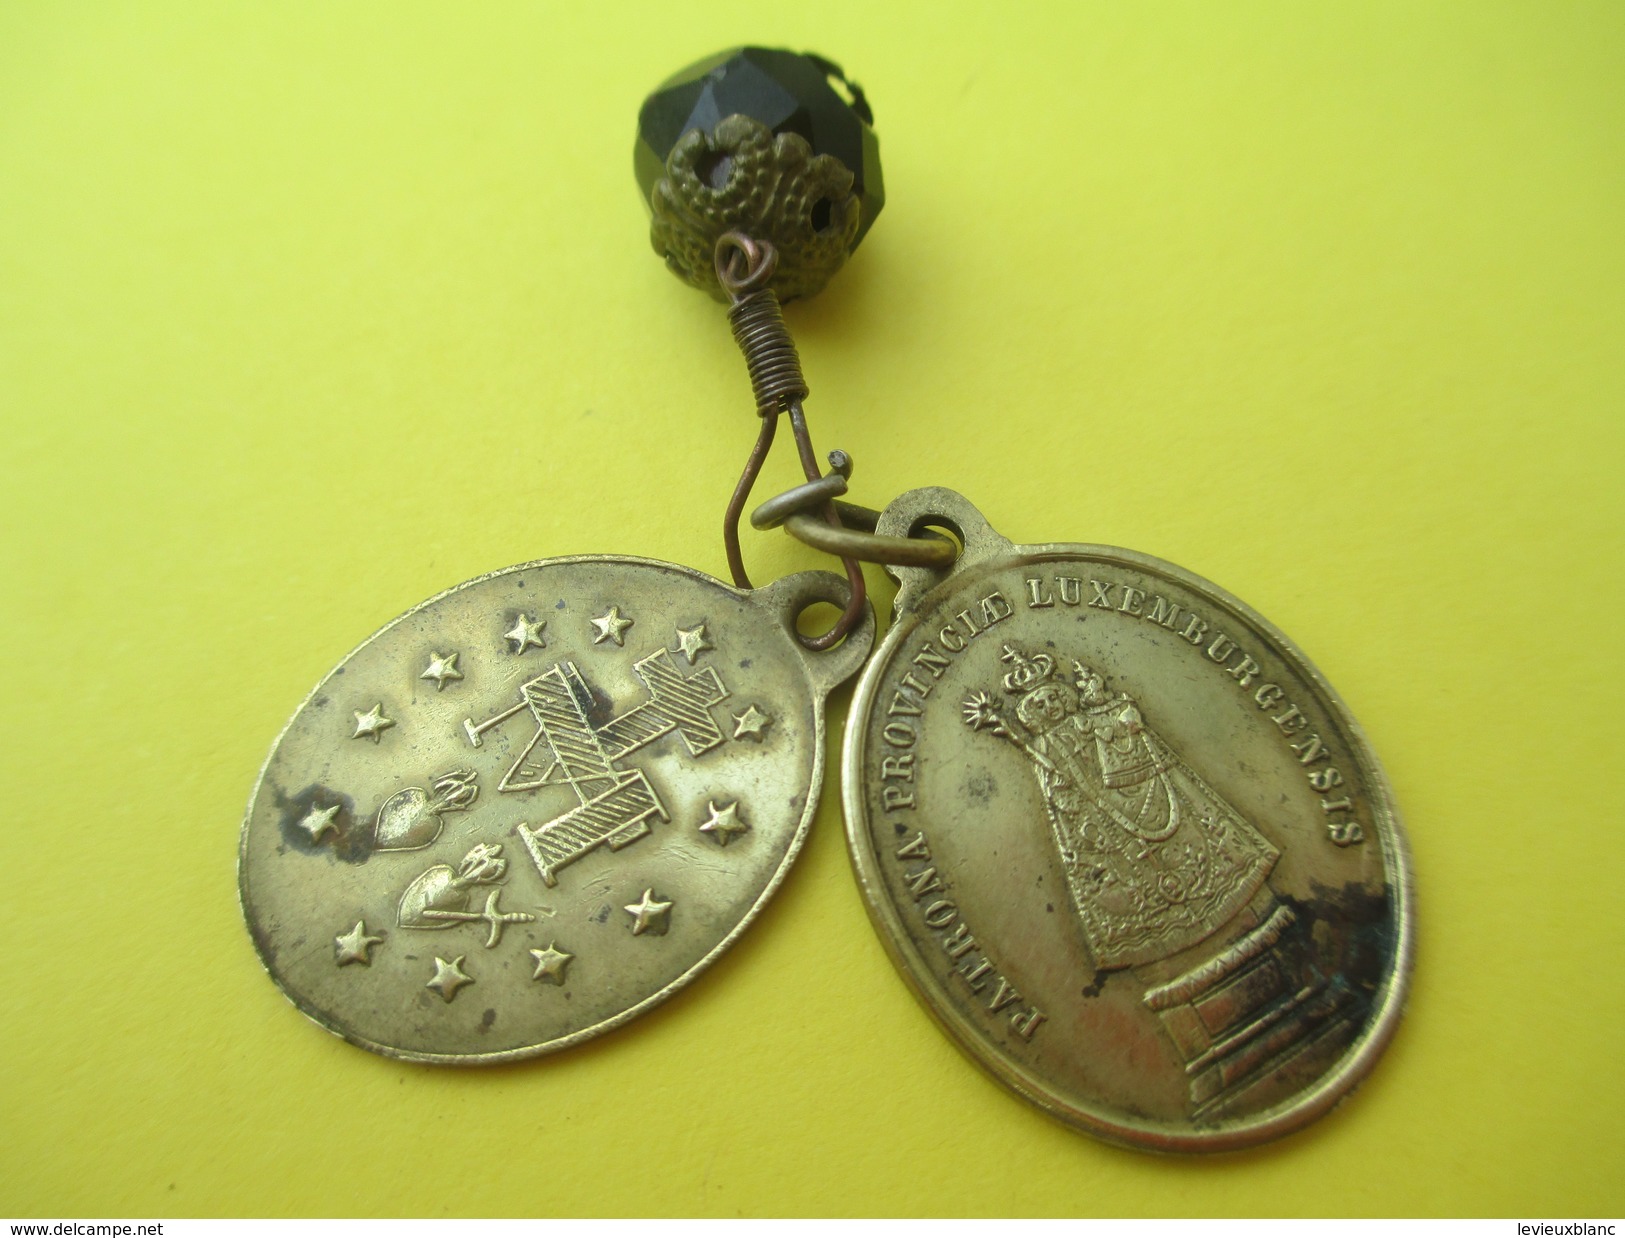 2 Médailles Religieuses Anciennes/Saint Joseph/Patrona Provinciae Luxemburgensis/Ô Marie/Fin XIXéme Siécle        CAN513 - Religion & Esotericism